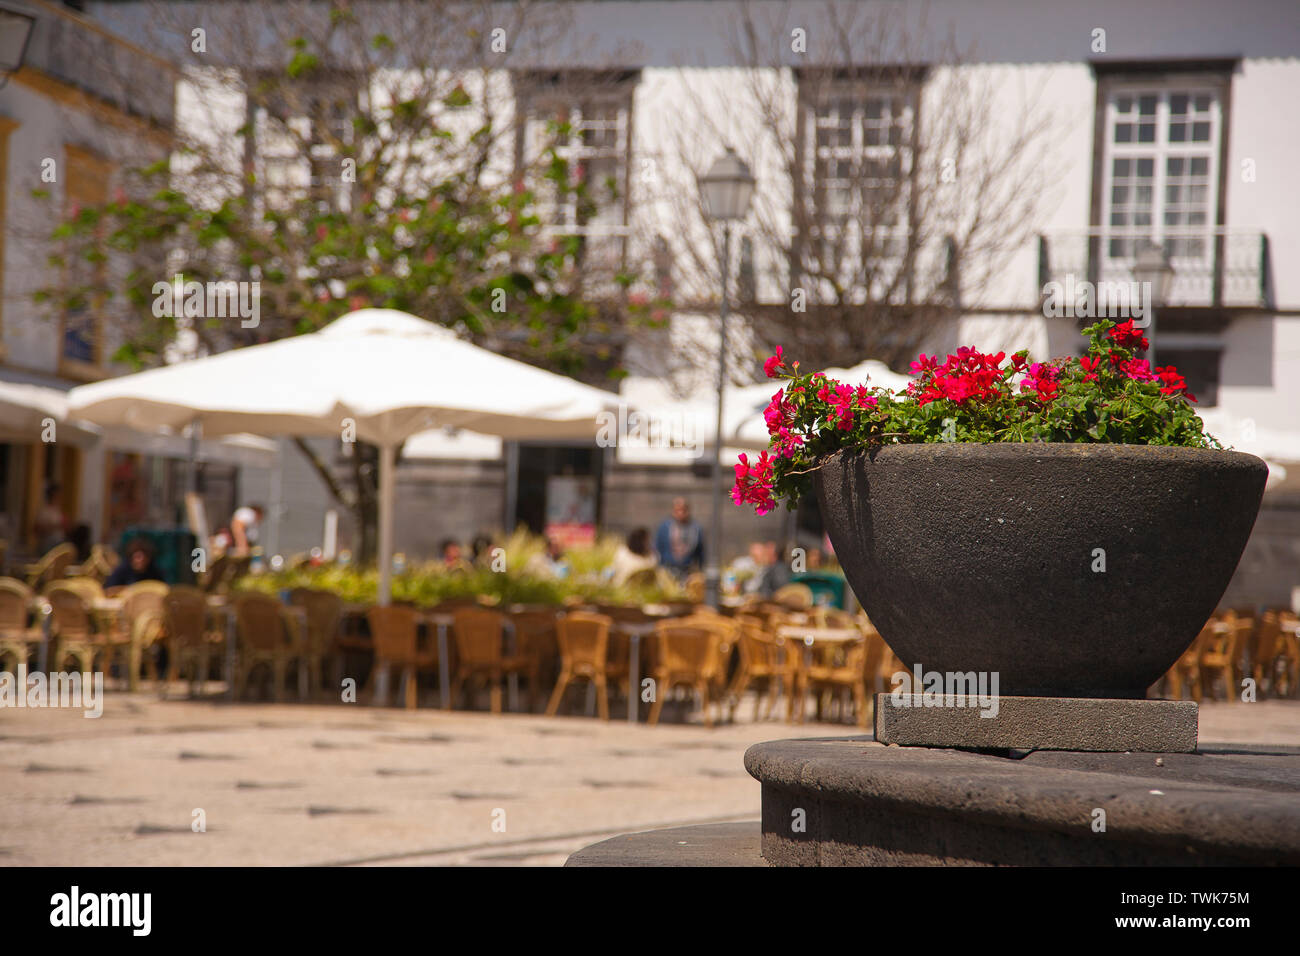 Friedliche plazza in der Stadt Ponta Delgada, Sao Miguel, Azoren, Portugal. Schwerpunkt liegt auf den Blumentopf. Stockfoto